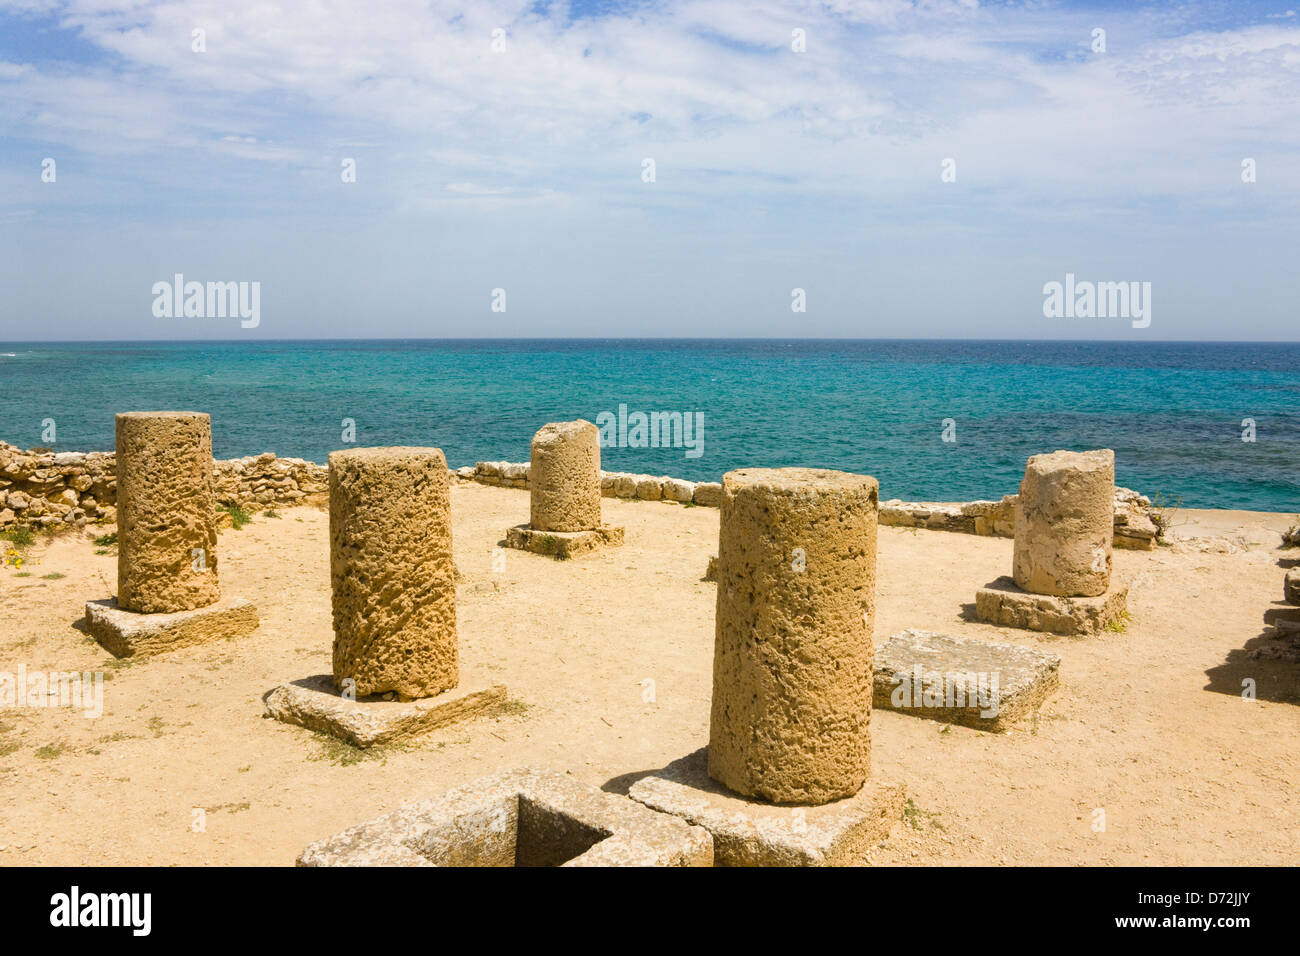 Presto le rovine romane, casa con cortile e peristilio, Rovine di Kerkouane, Cap Bon, in Tunisia Foto Stock